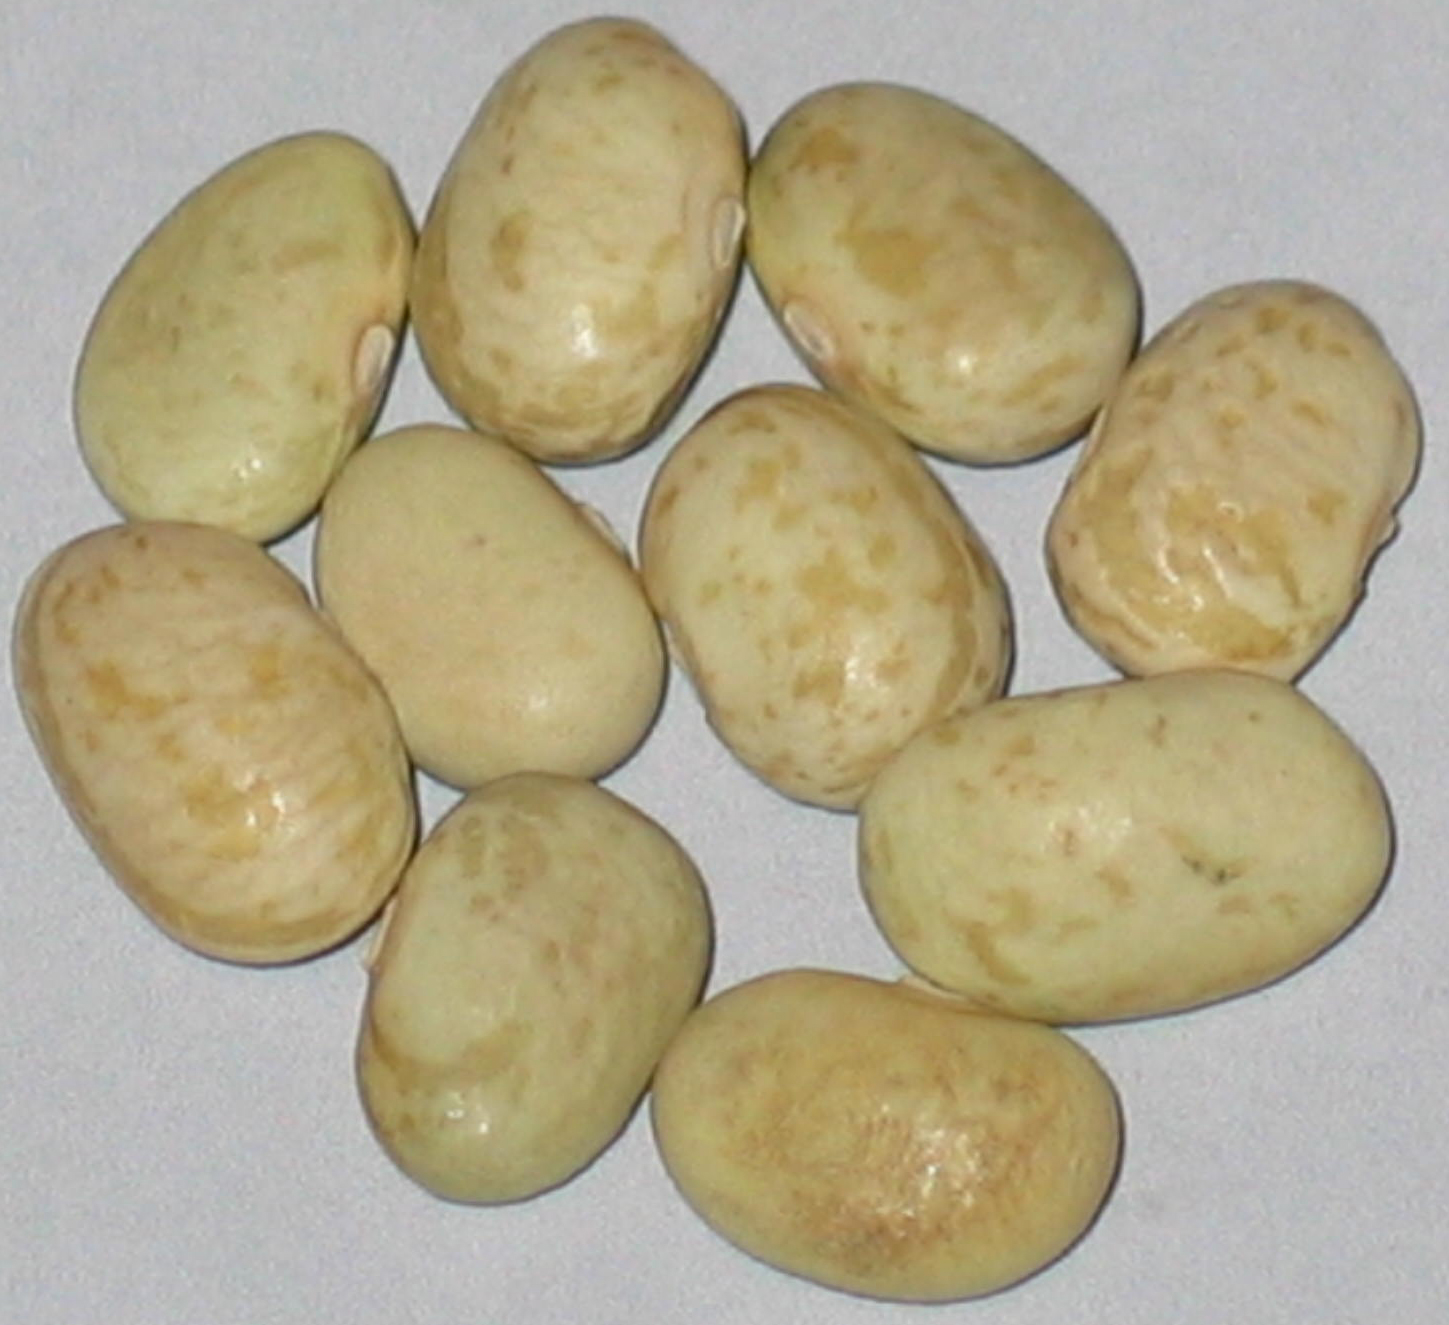 image of Coscorrones beans